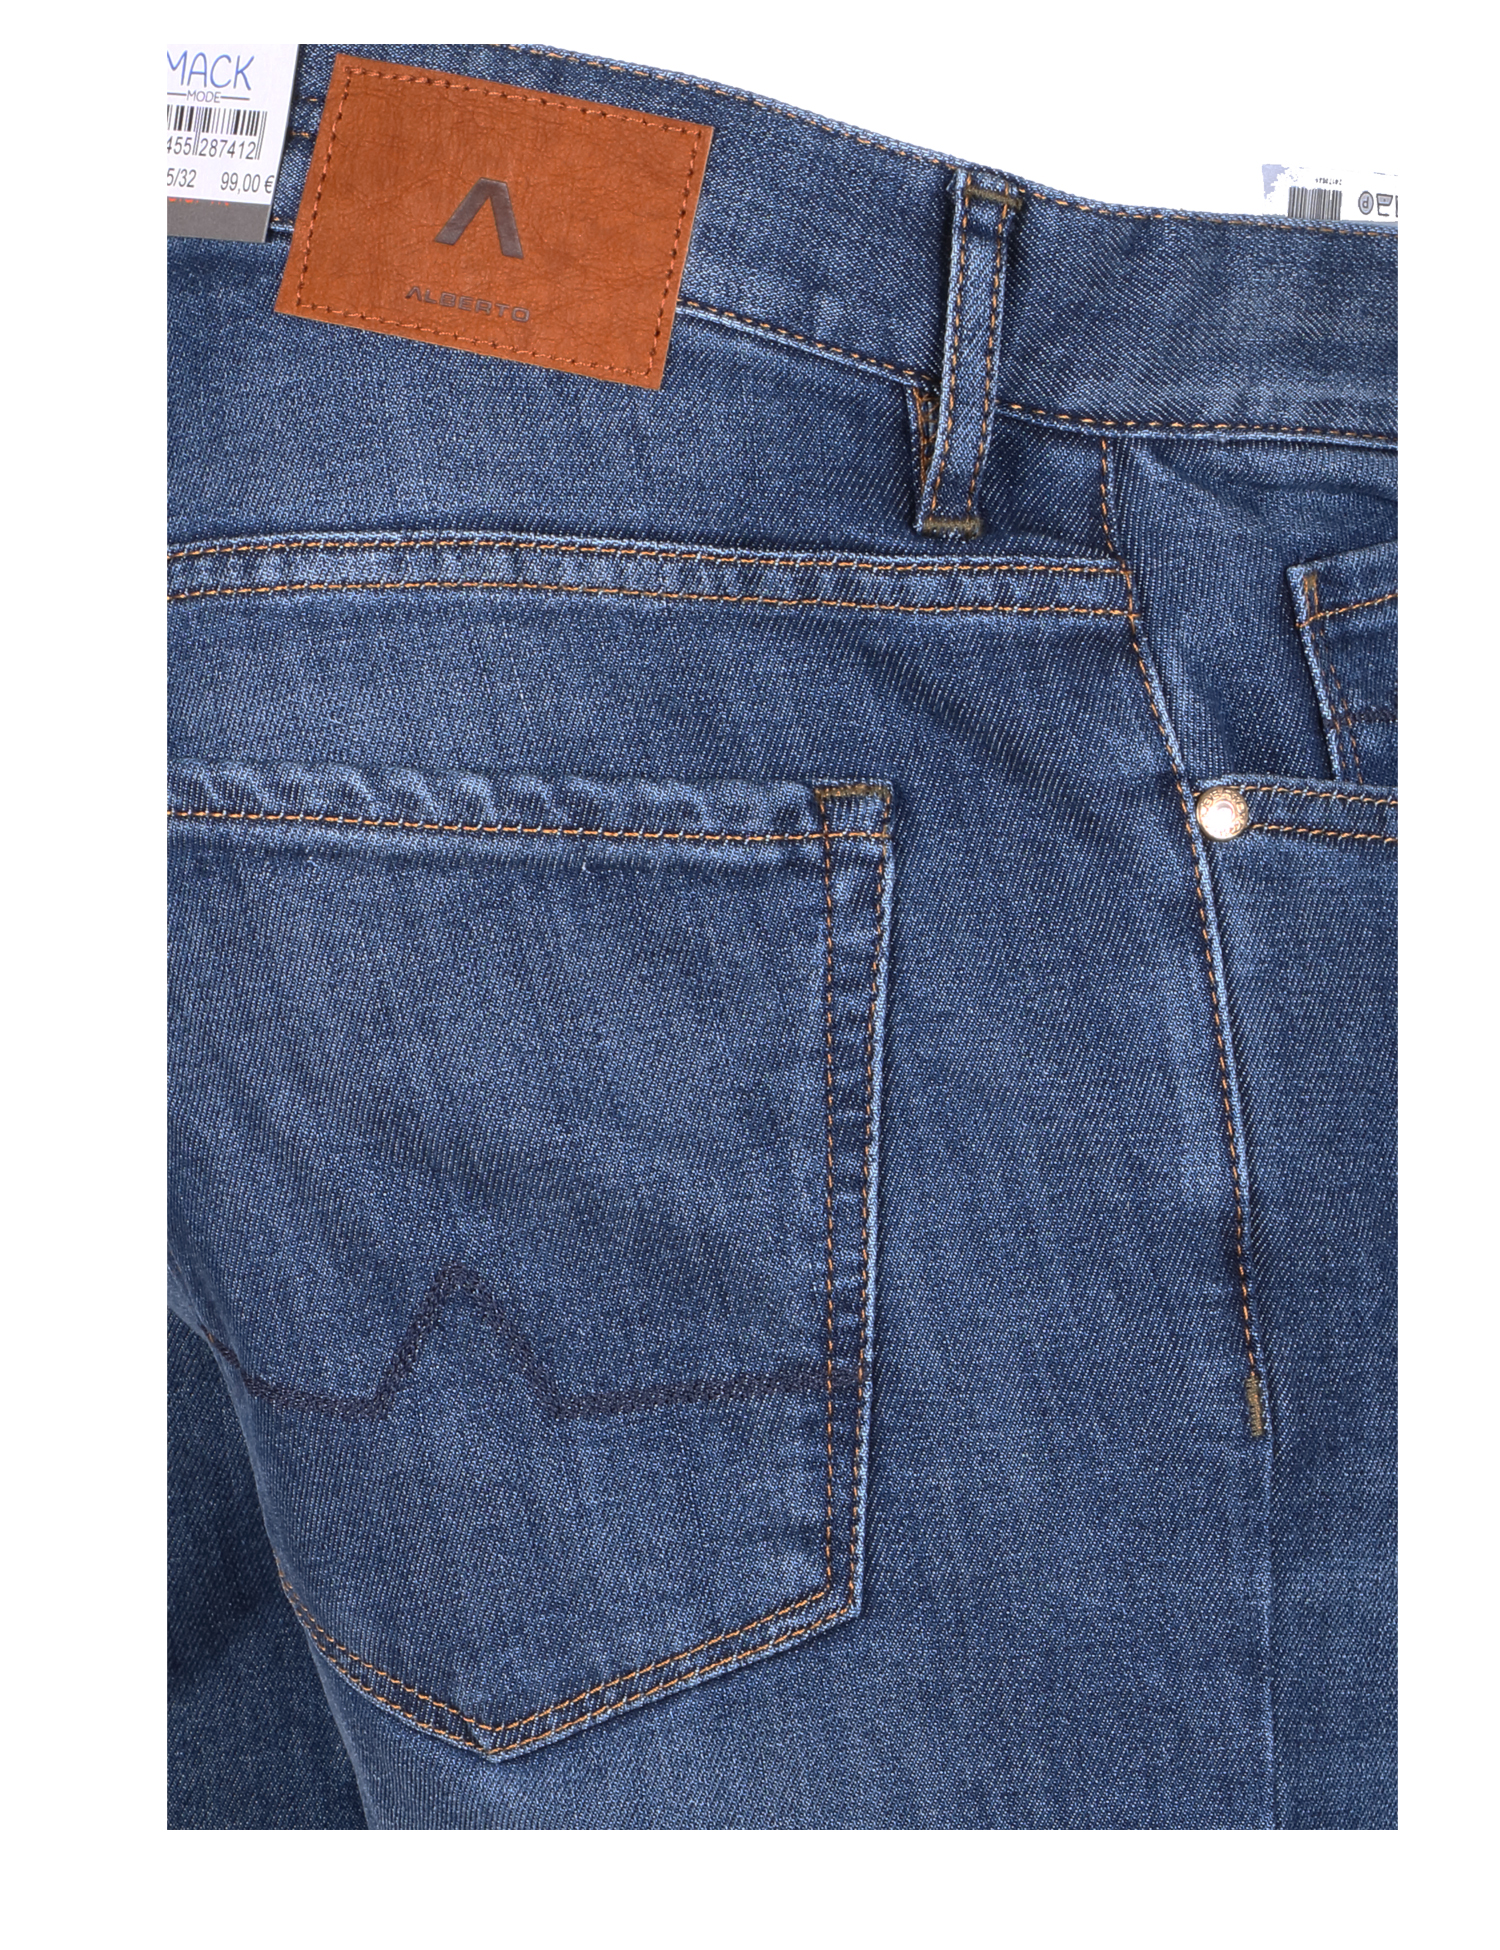 Alberto Herren Jeans Pipe regular fit - blau 34/32